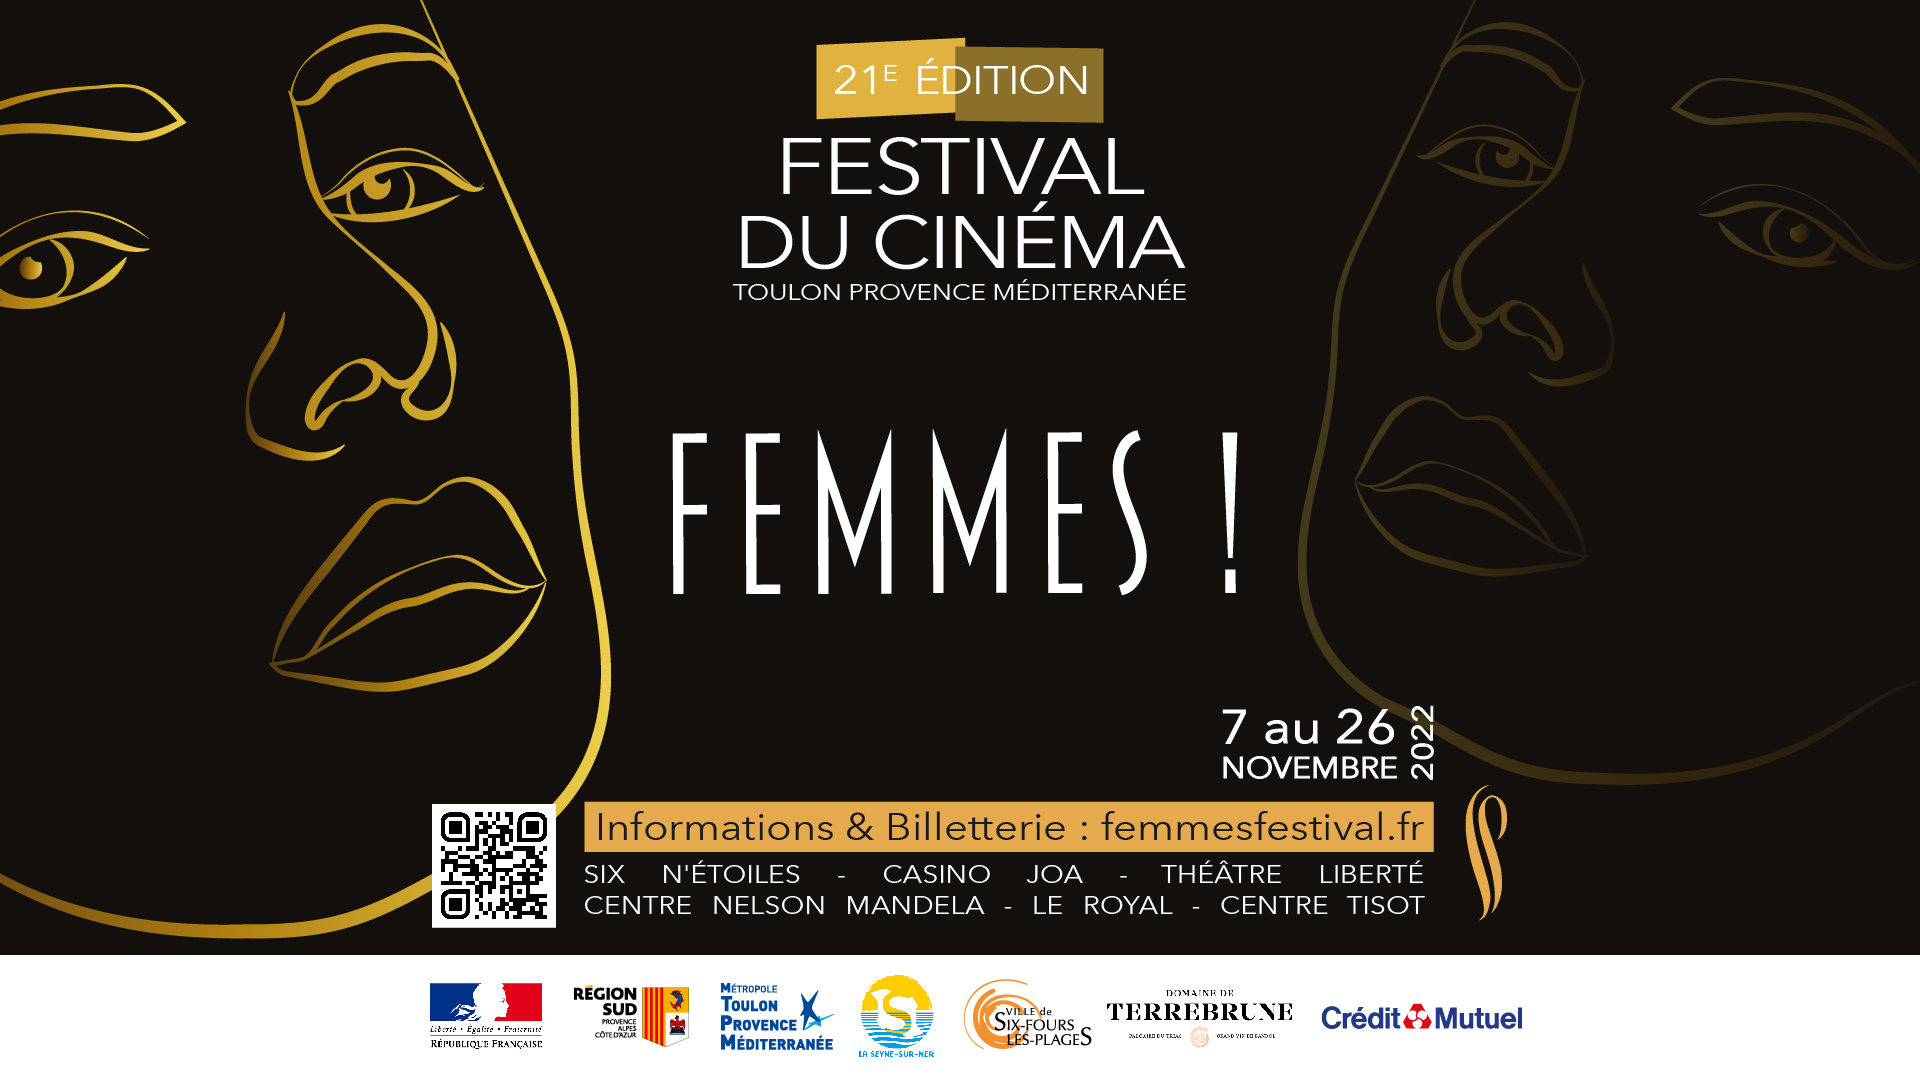 Festival Femmes! 